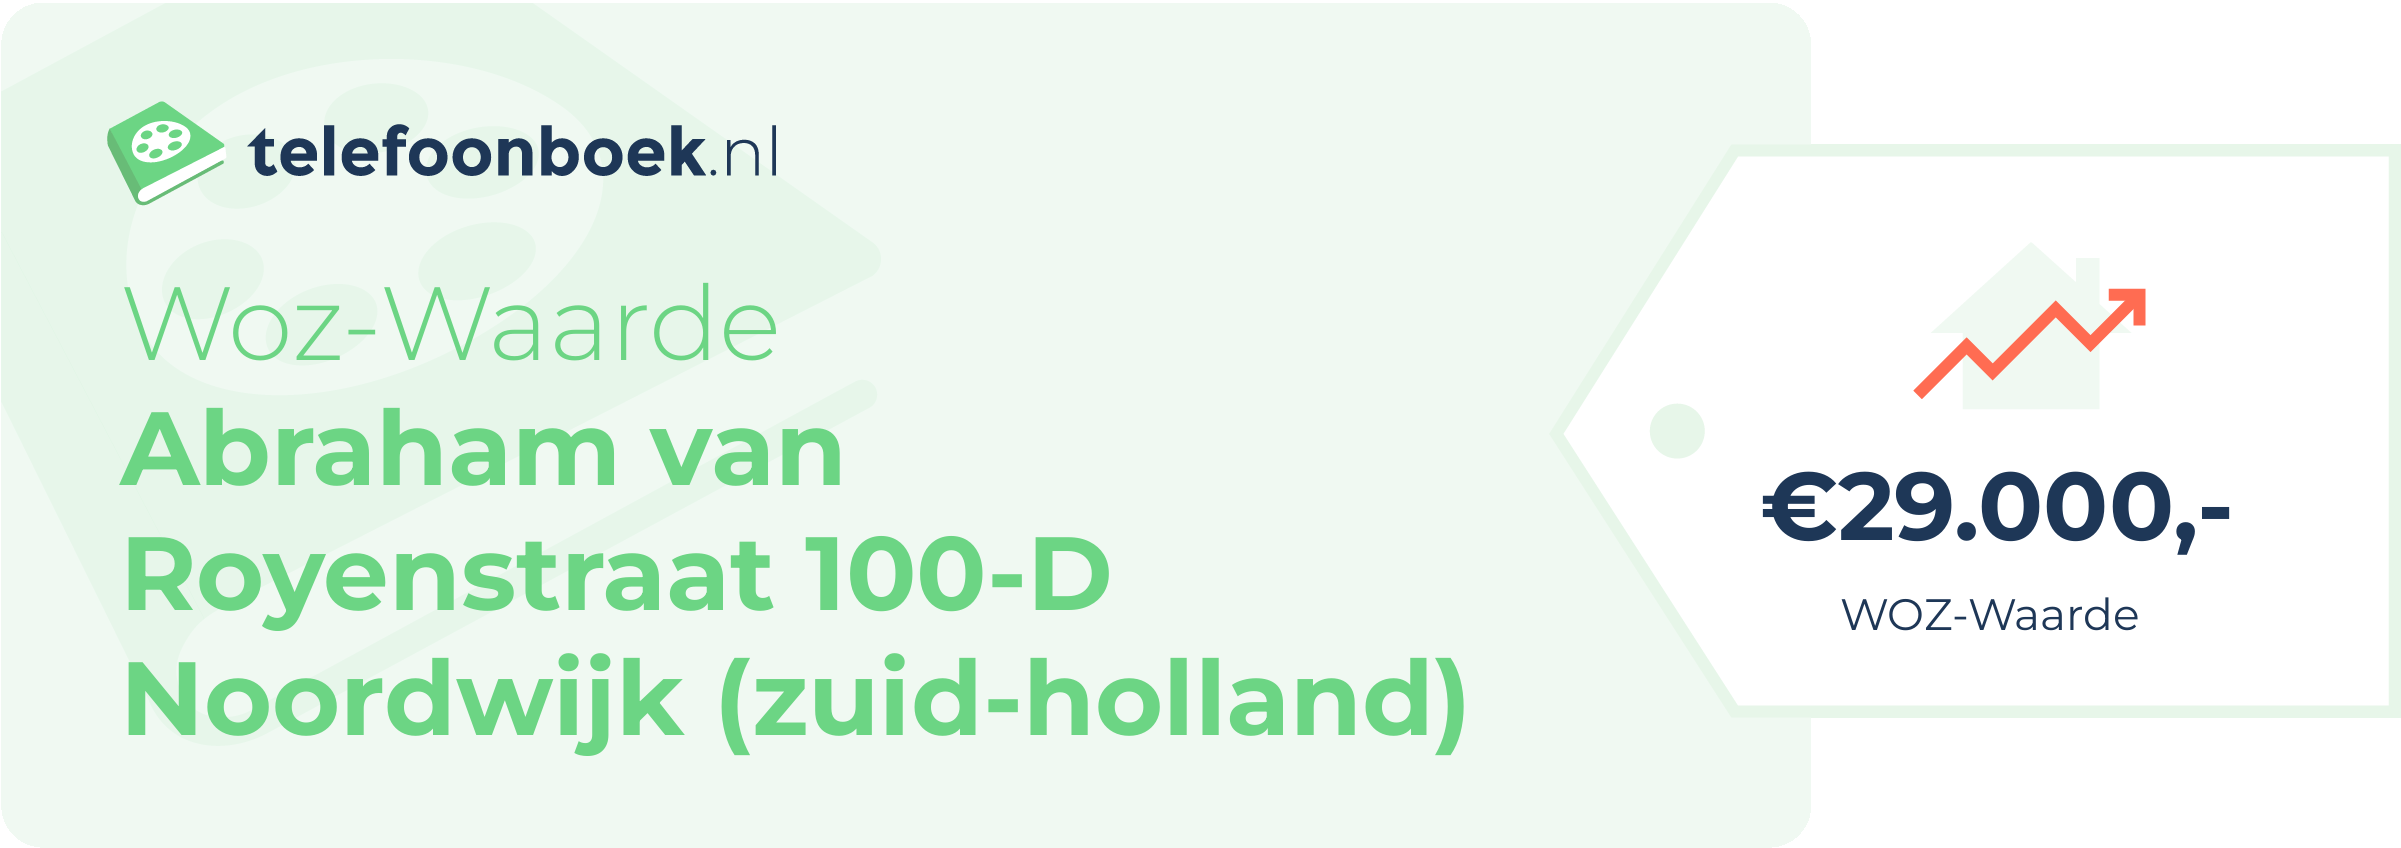 WOZ-waarde Abraham Van Royenstraat 100-D Noordwijk (Zuid-Holland)